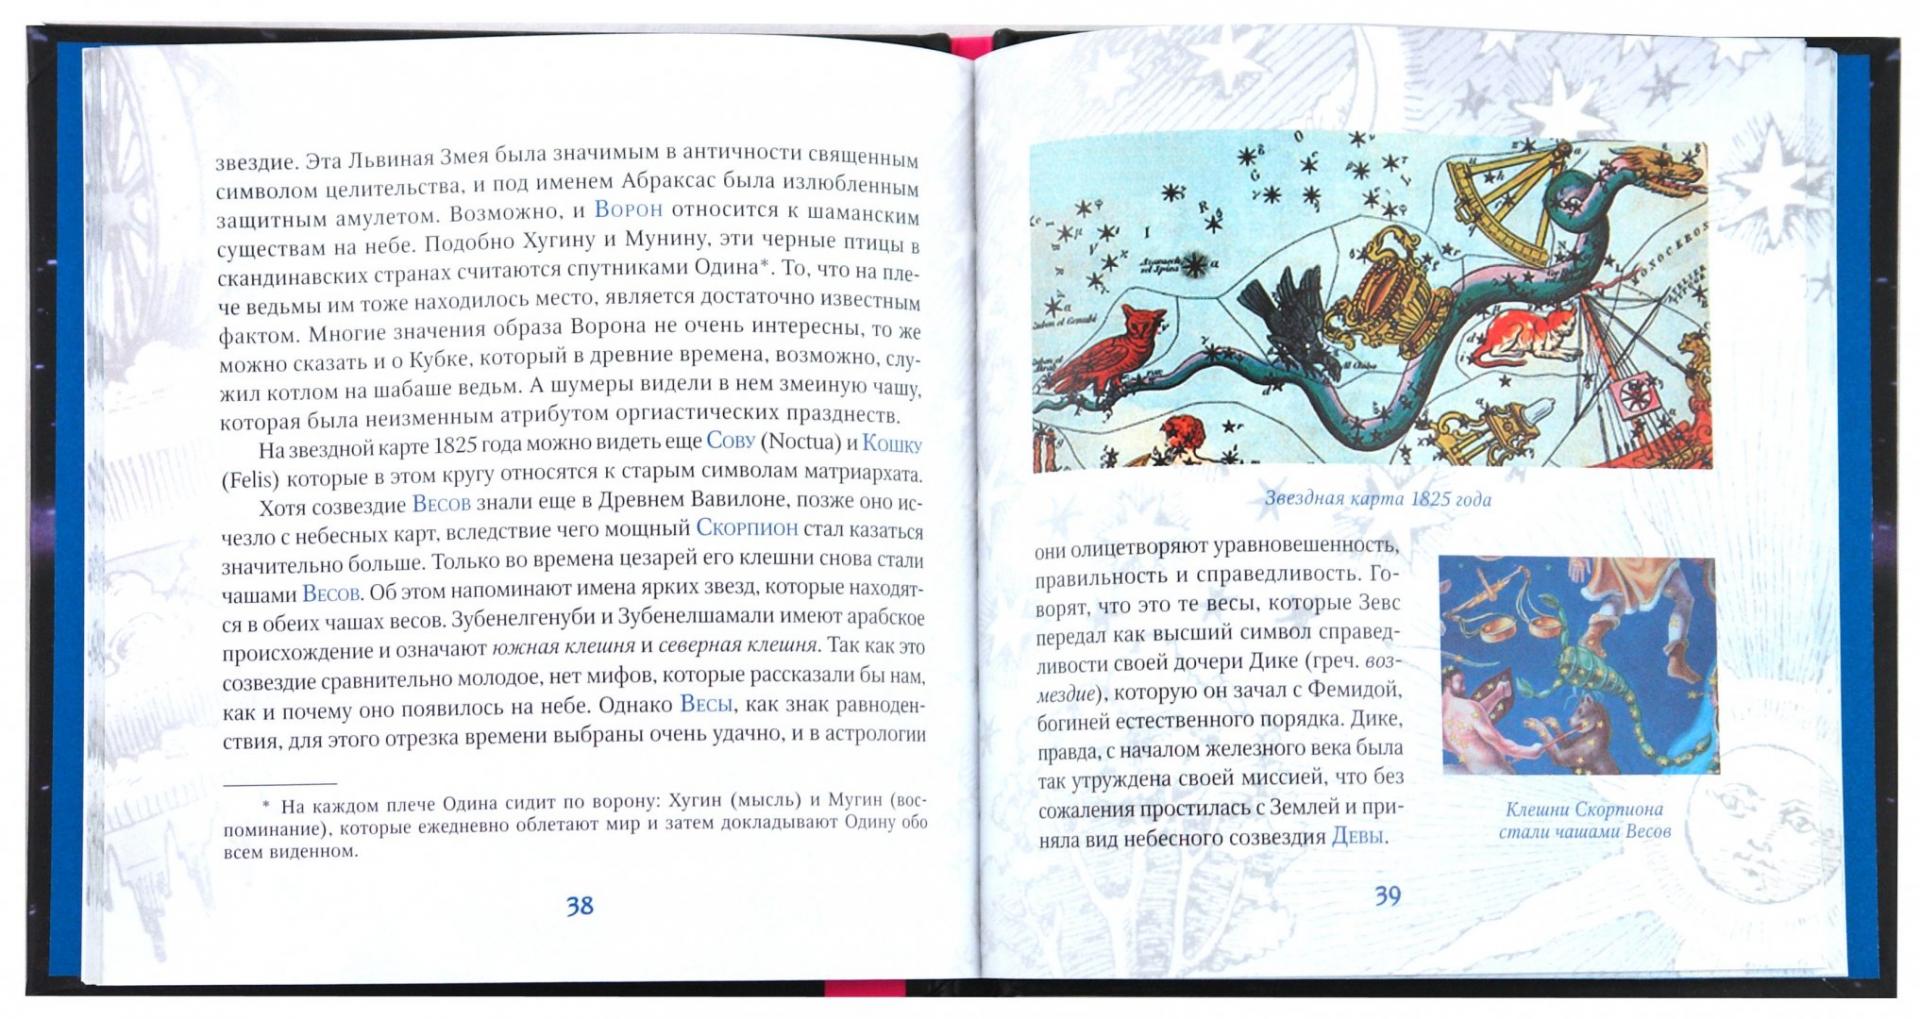 Иллюстрация 1 из 6 для Истории звездного неба: соблазны, подвиги, тайные драмы - Хайо Банцхаф | Лабиринт - книги. Источник: Лабиринт